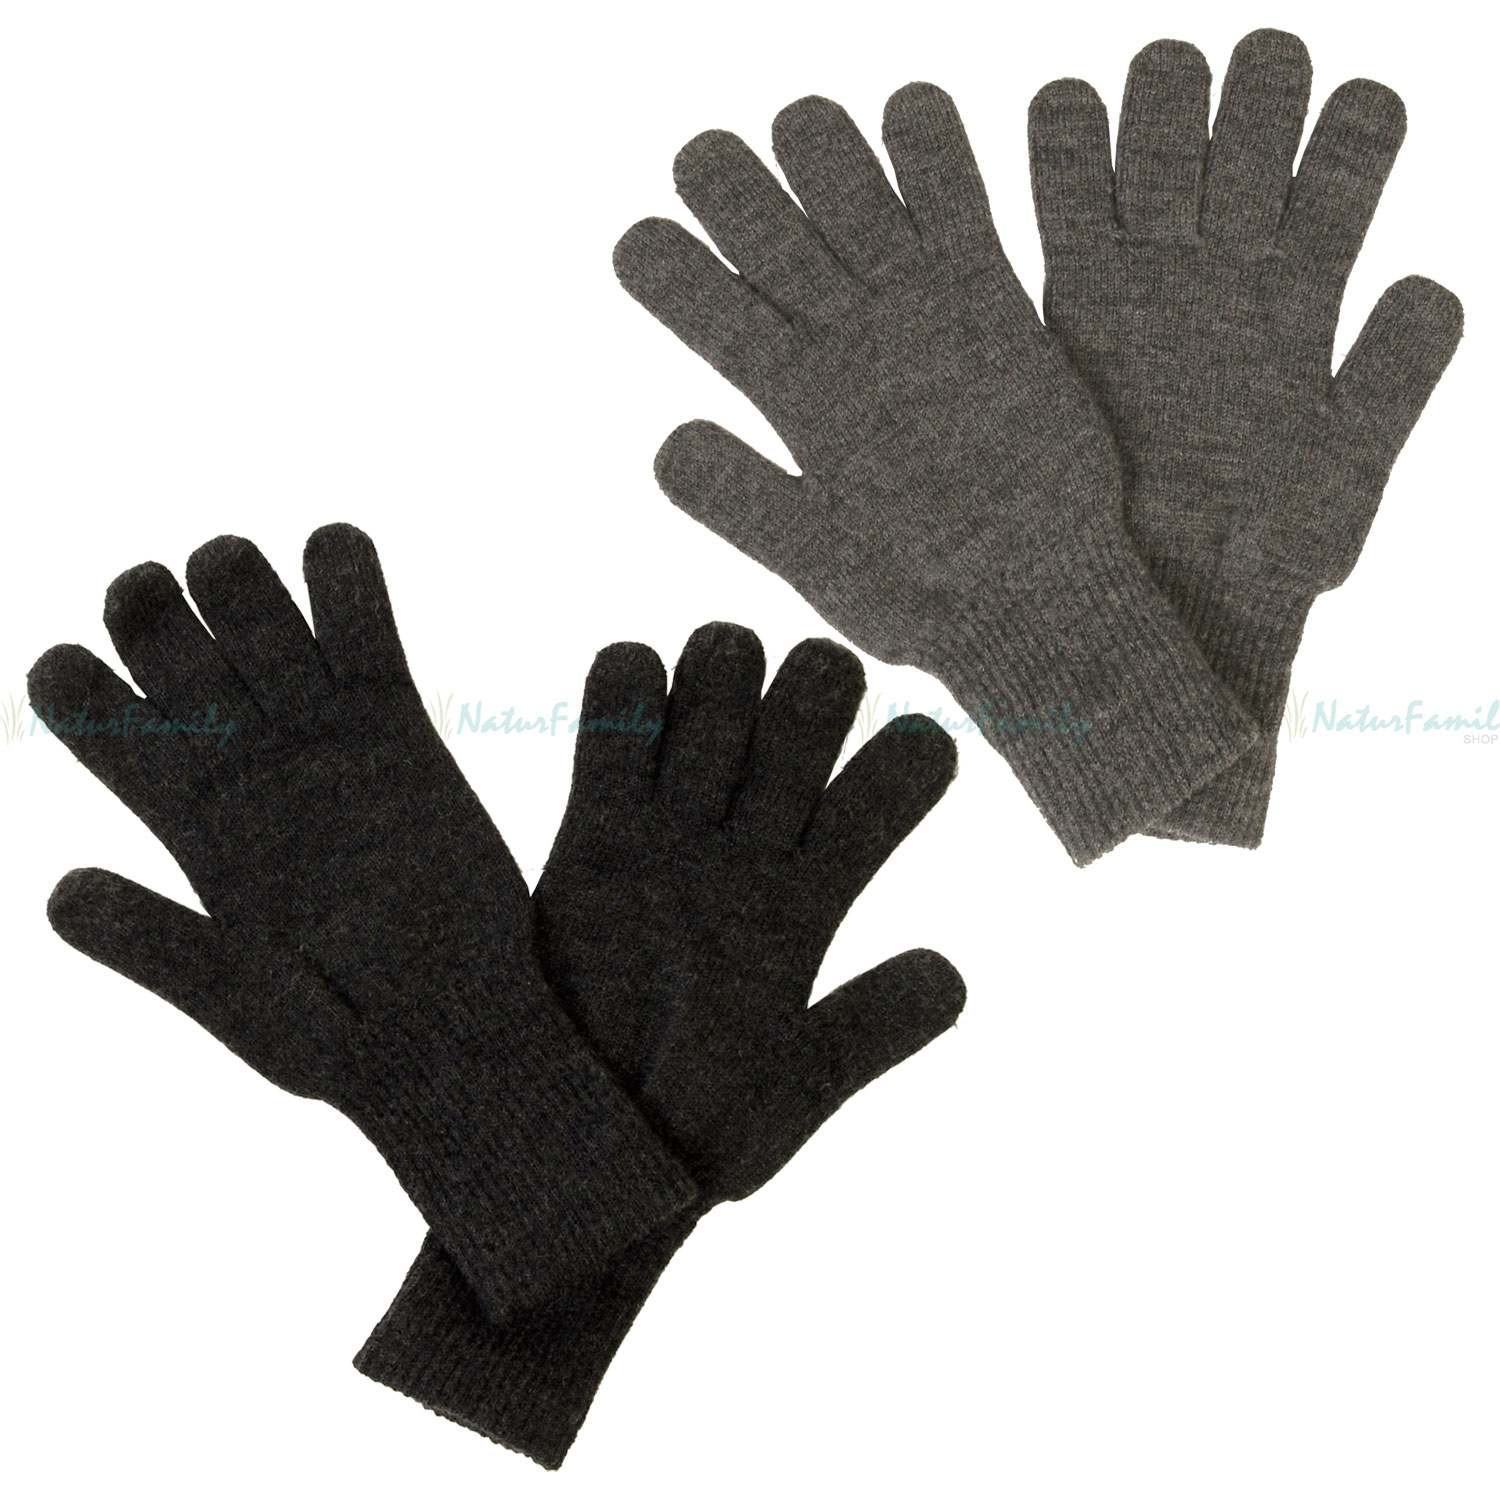 Reiff Strick Fingerhandschuhe 100 % Merino Schurwolle Handschuhe -  NaturFamily Shop - Naturtextilien für Babys, Kinder und ganze Familie